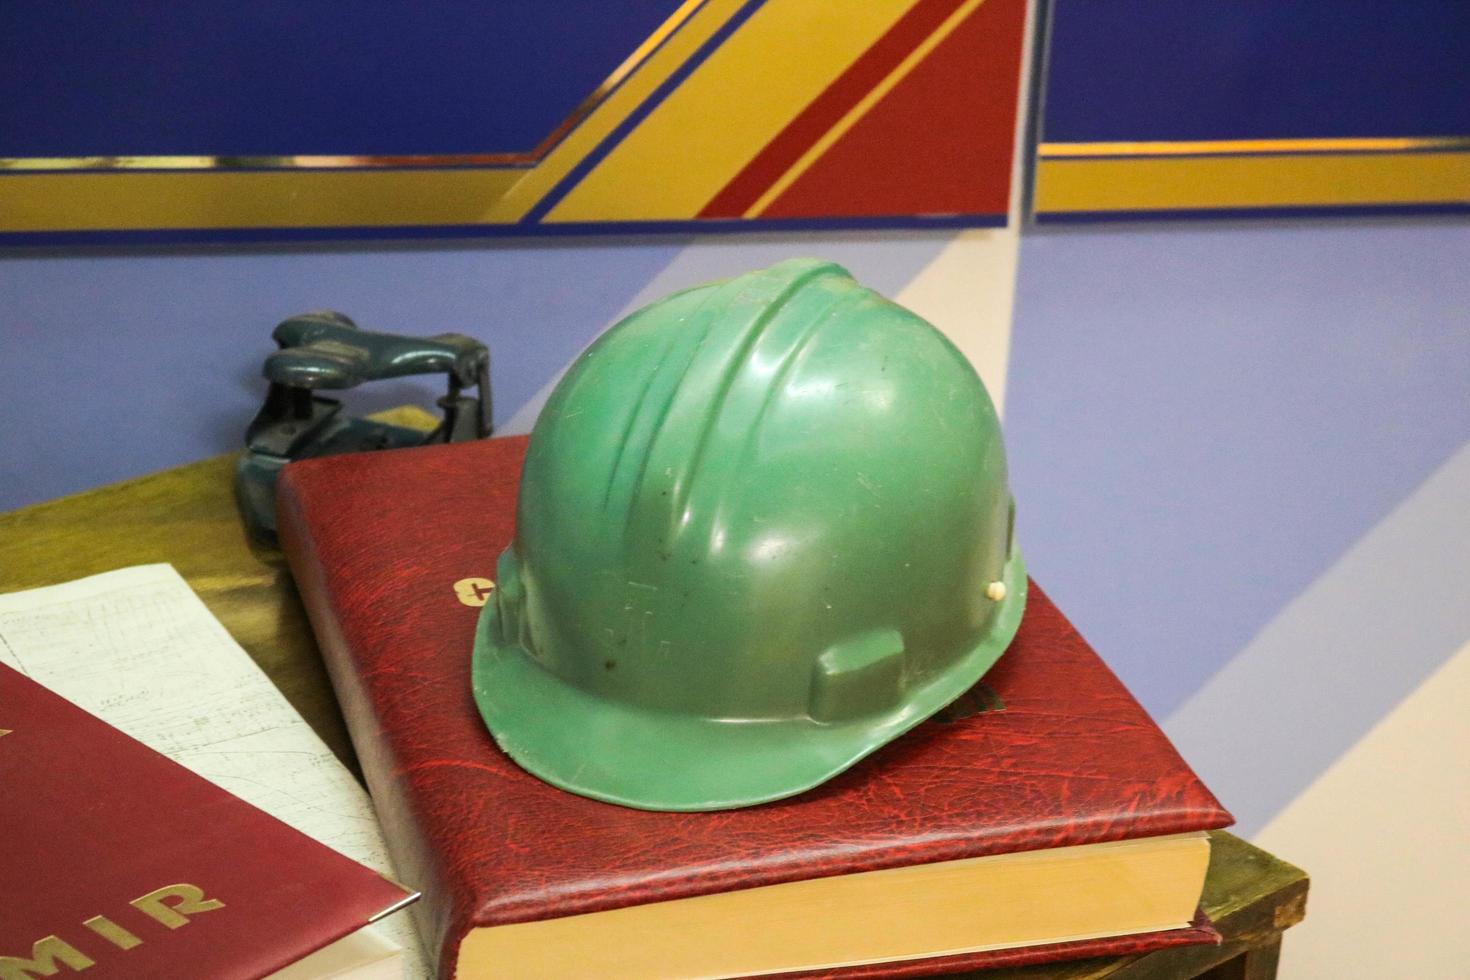 casco de seguridad de plástico verde para el trabajador. casco protector para proteger la cabeza de las personas que operan en condiciones peligrosas en la fábrica foto